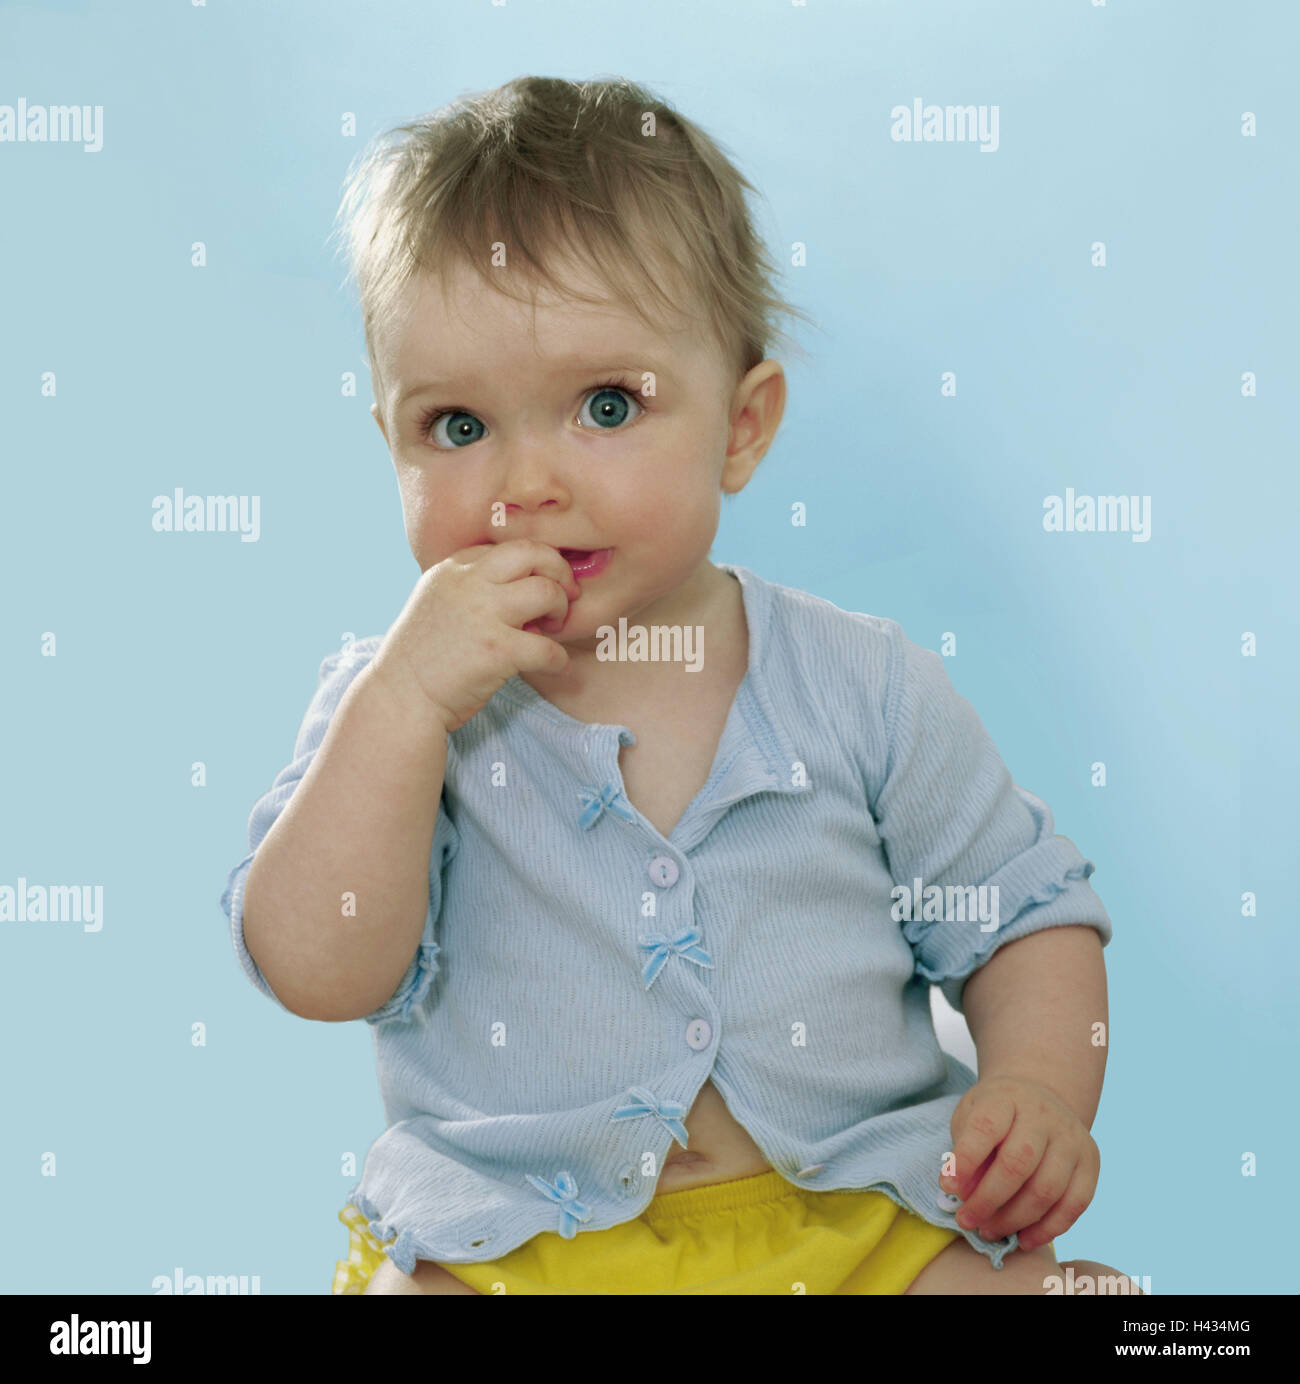 Il Toddler, ragazze, mano, bocca, touch, dettaglio, serie, persone, bambino, 9 mesi, top luce-blu, sguardo fotocamera, eye-colore blu, infanzia liberamente, naturalezza, interna Foto Stock